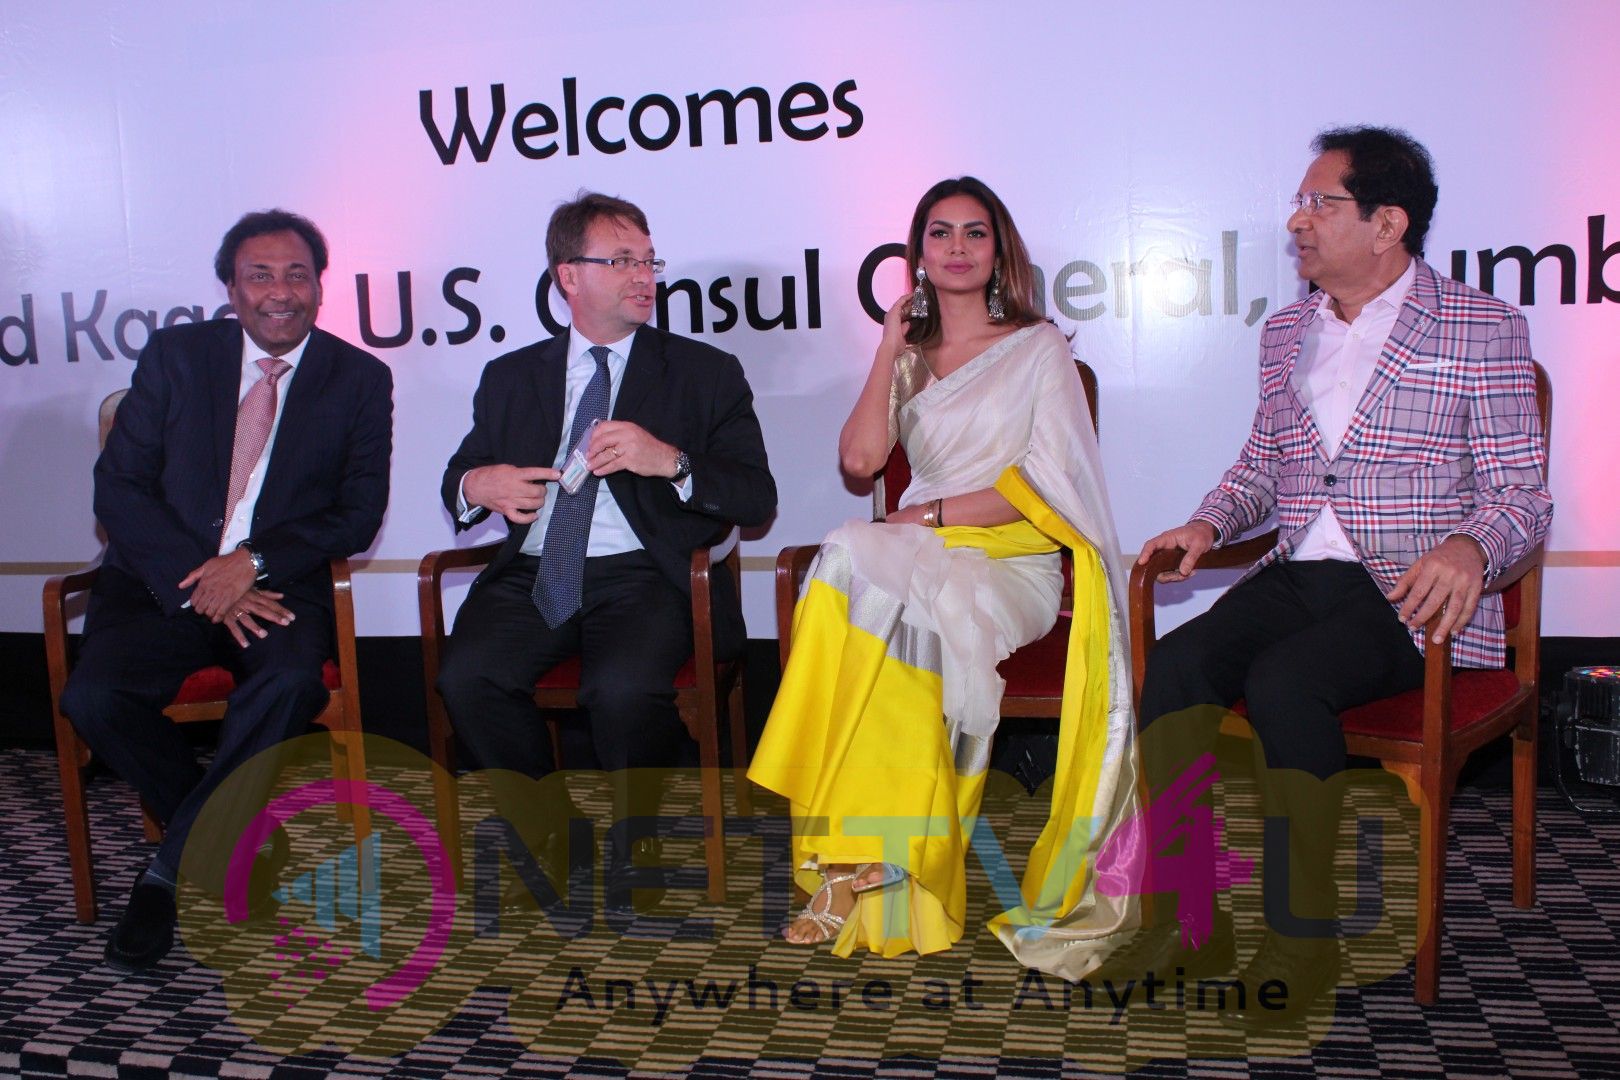 Esha Gupta At Press Meet Of Namaste America Pics Hindi Gallery